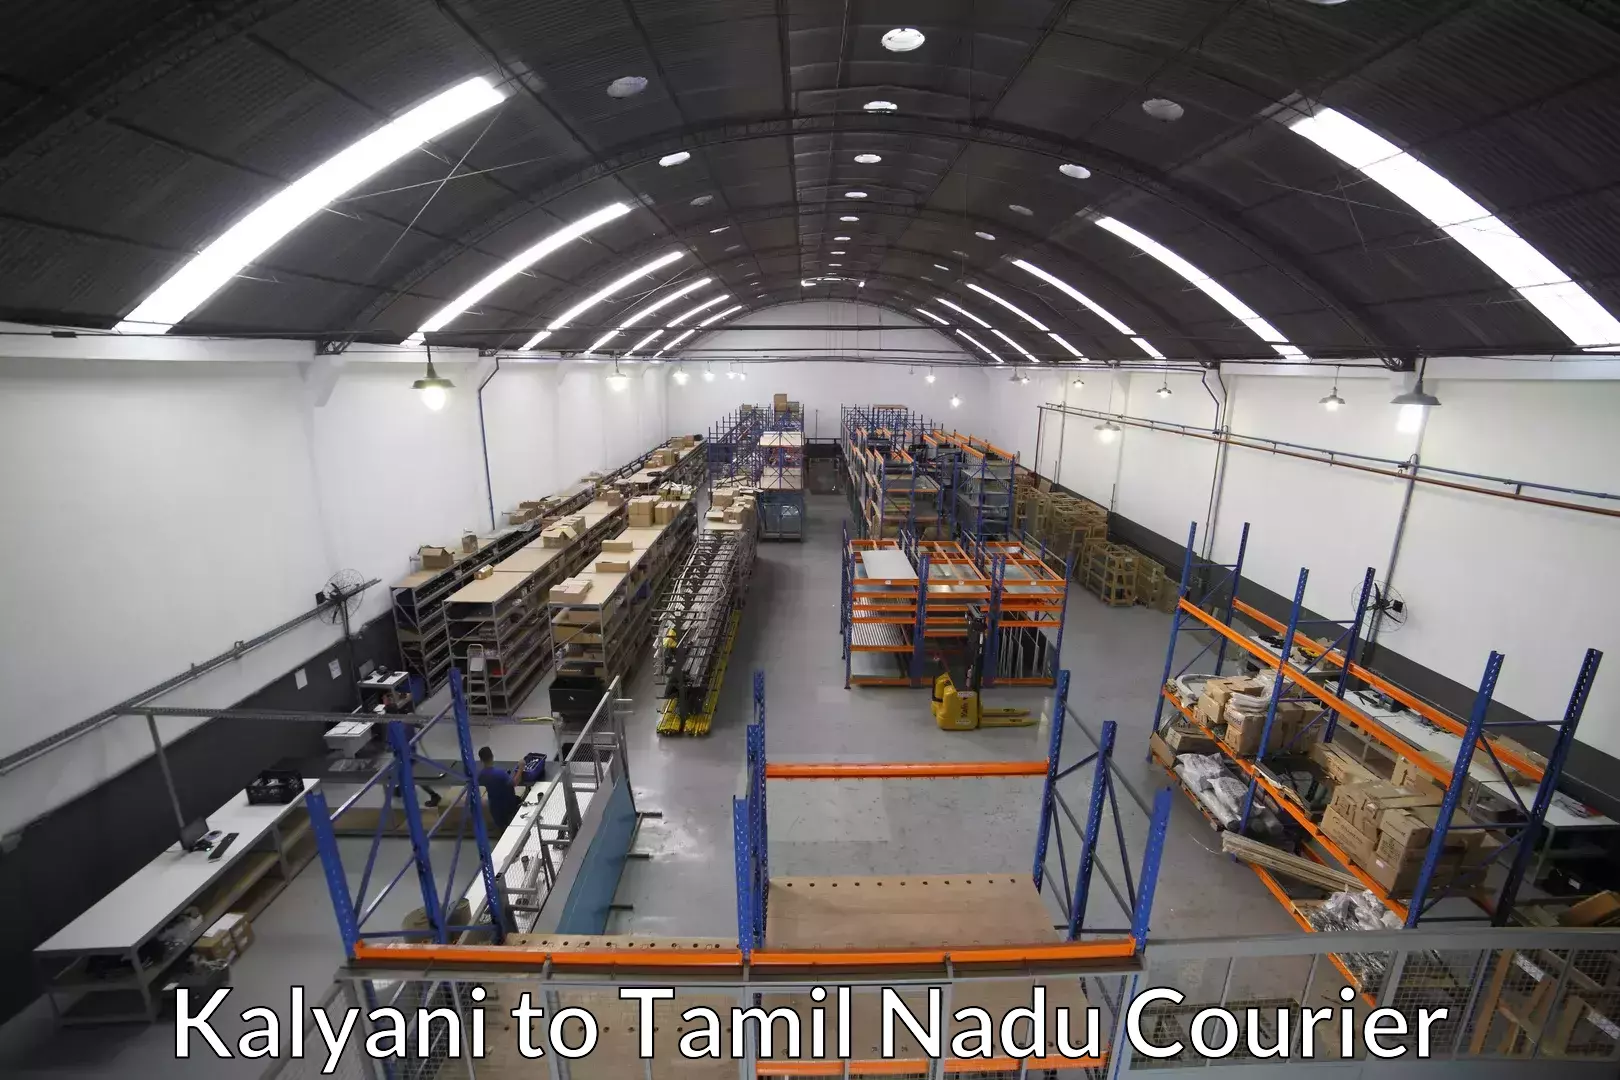 Furniture moving plans Kalyani to Tamil Nadu